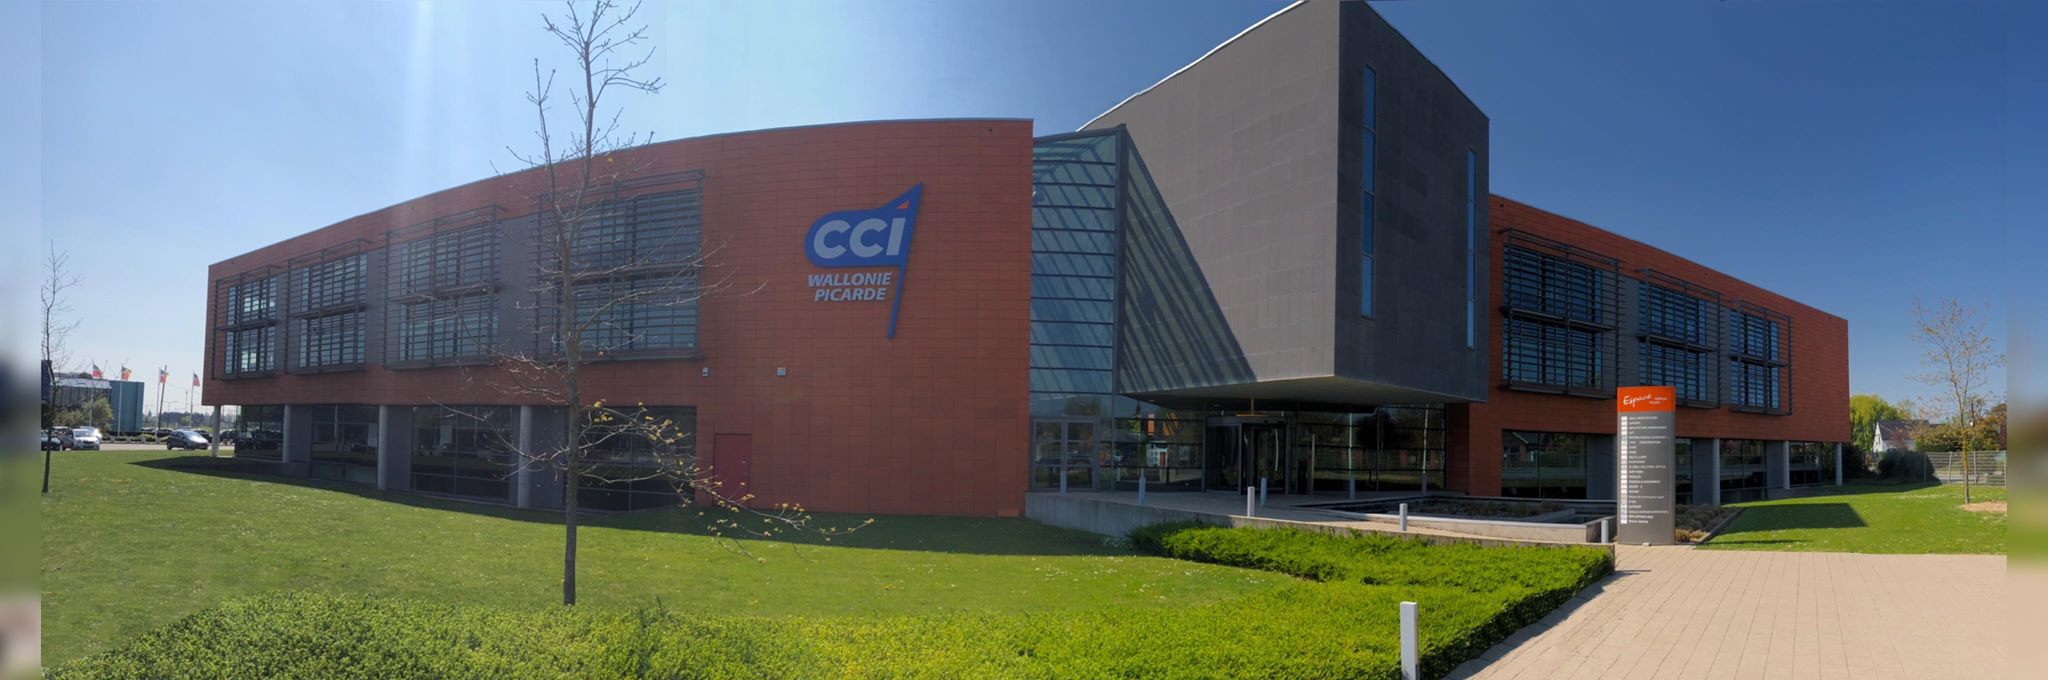 Bâtiment de la CCI